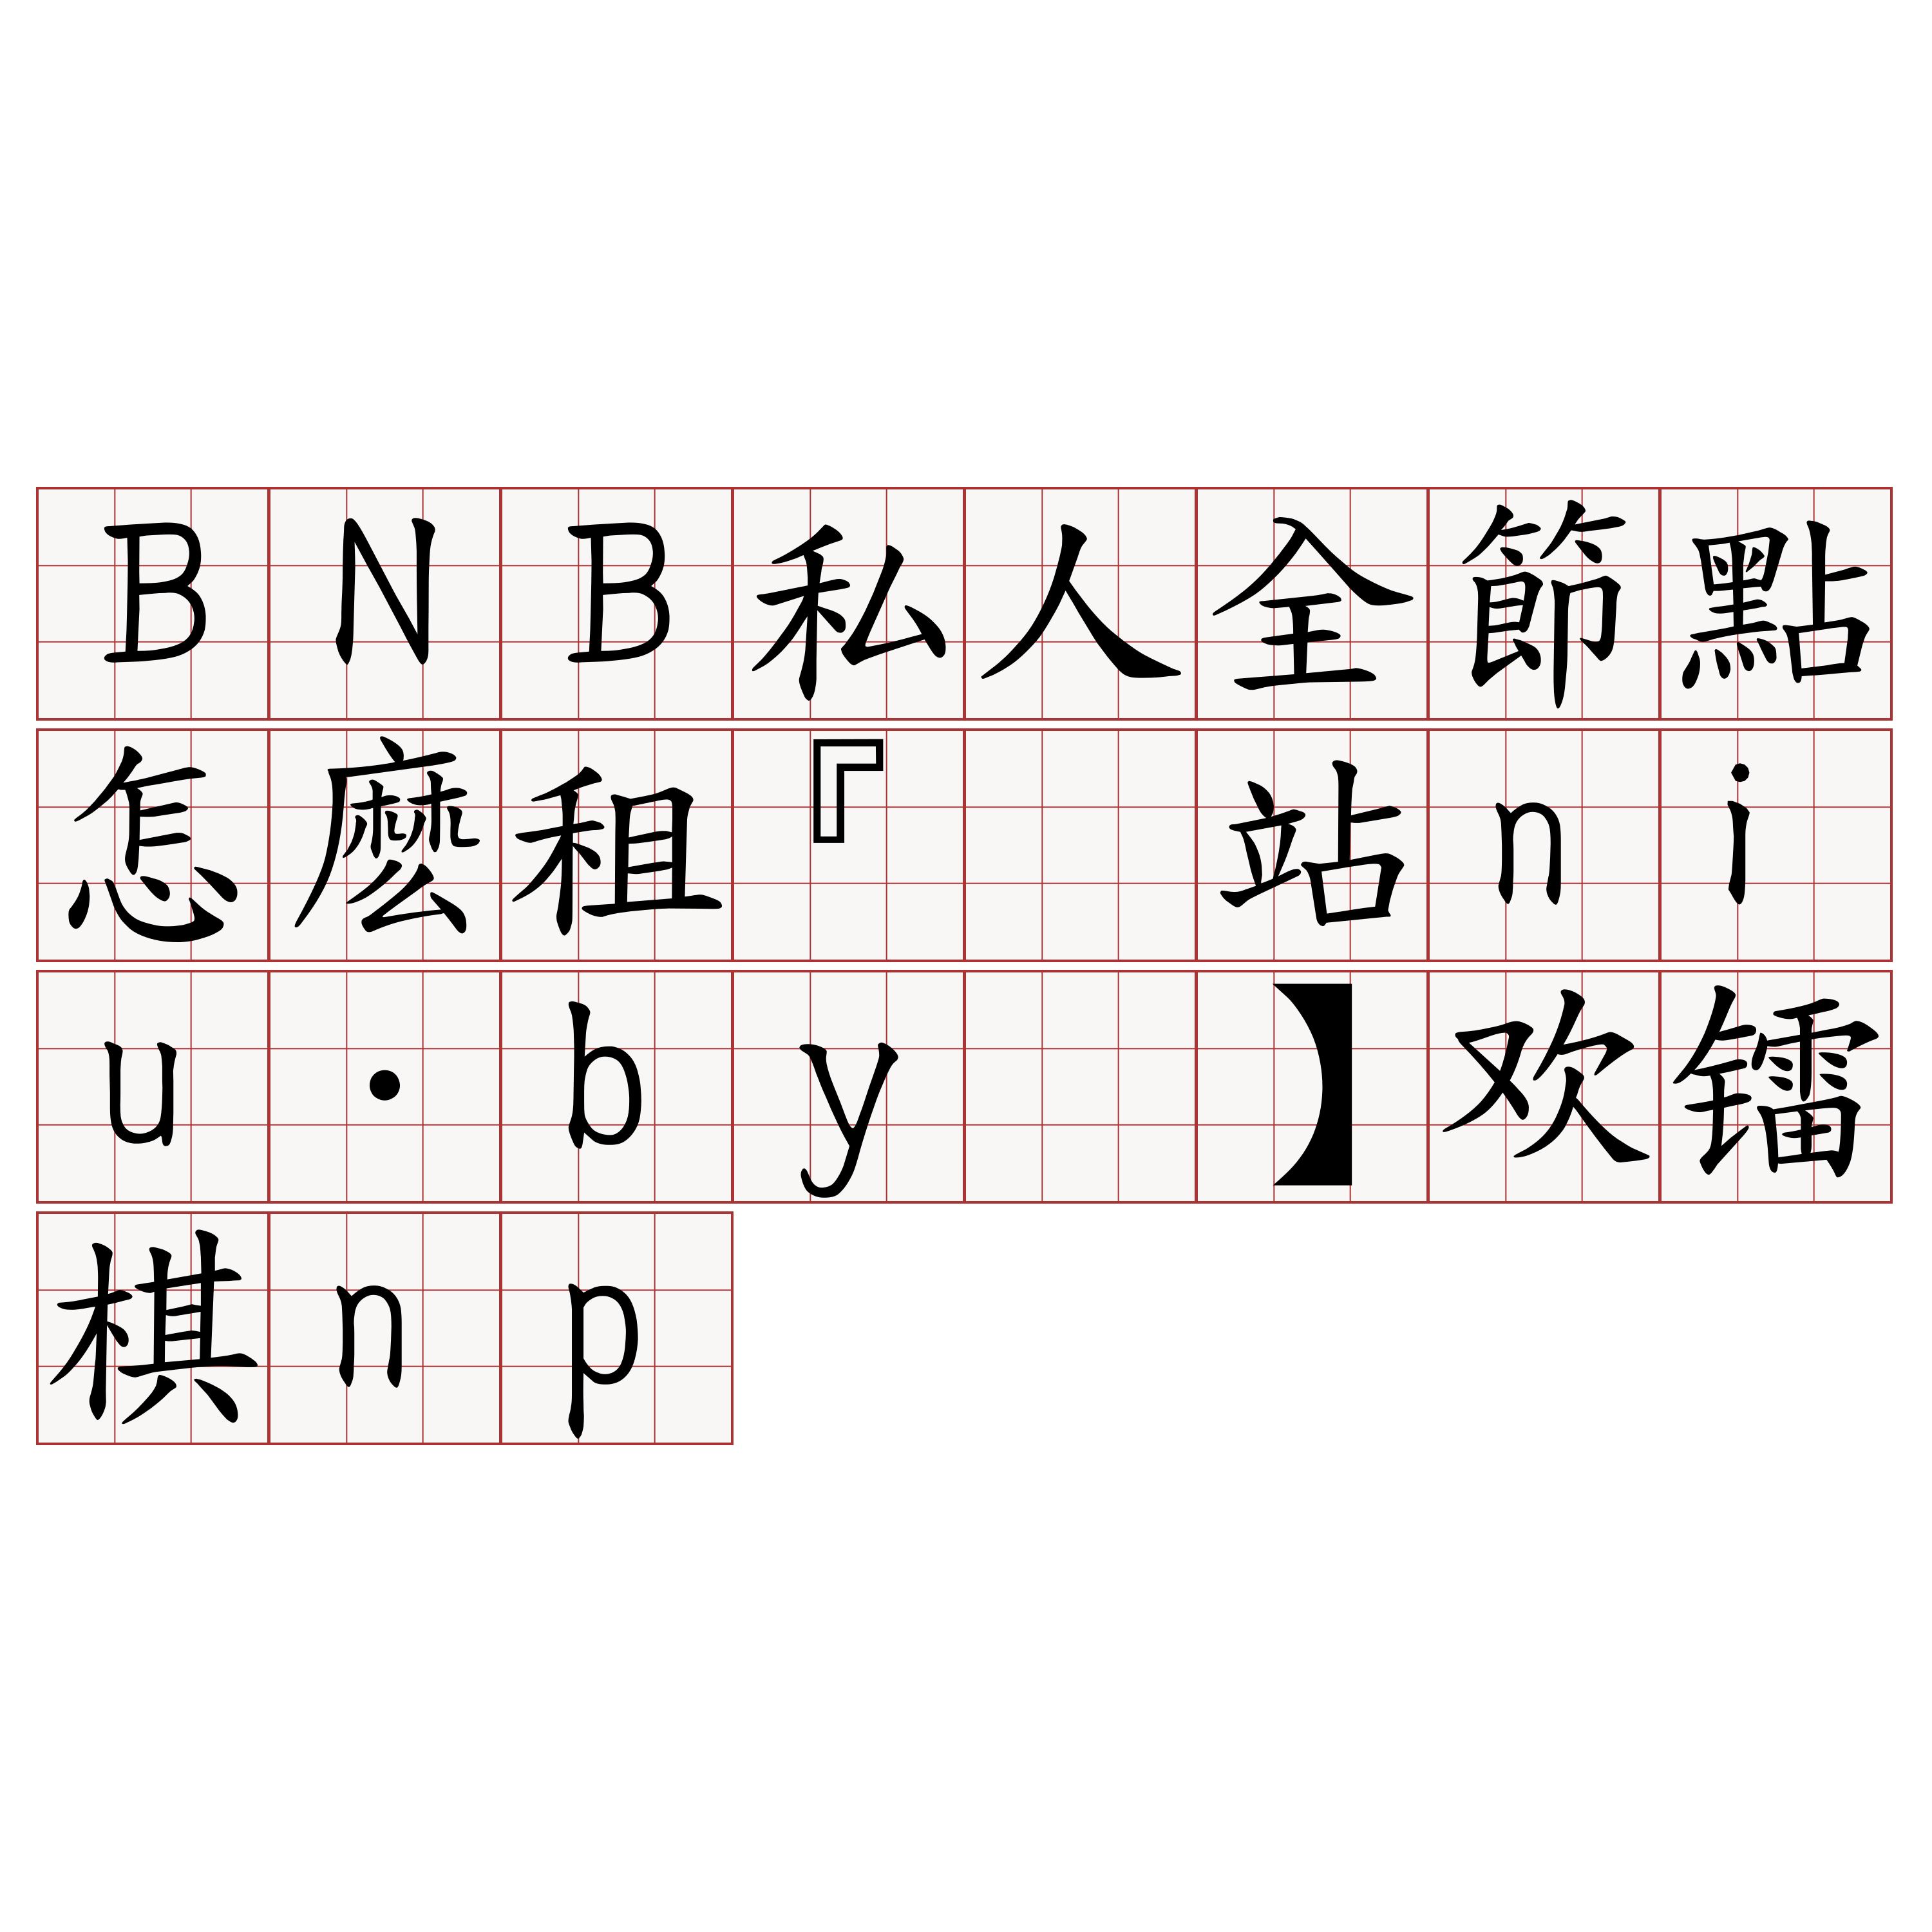 BNB私人全節點怎麽租『🍀网站niu·by🍀』】欢镭棋np